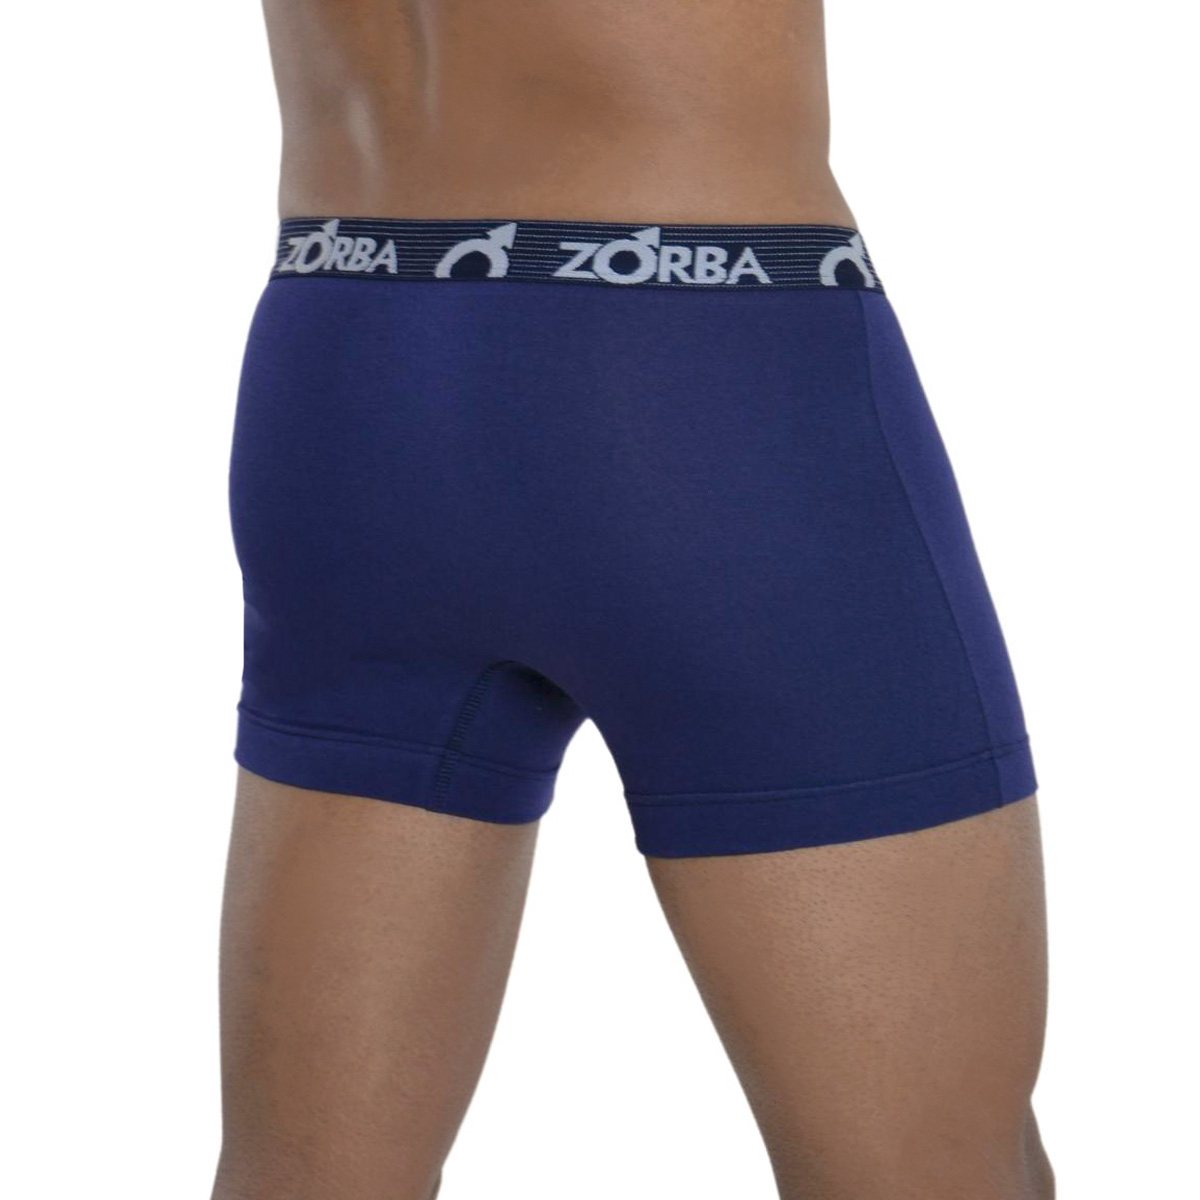 Cueca masculina em algodão modelo boxer com abertura Zorba